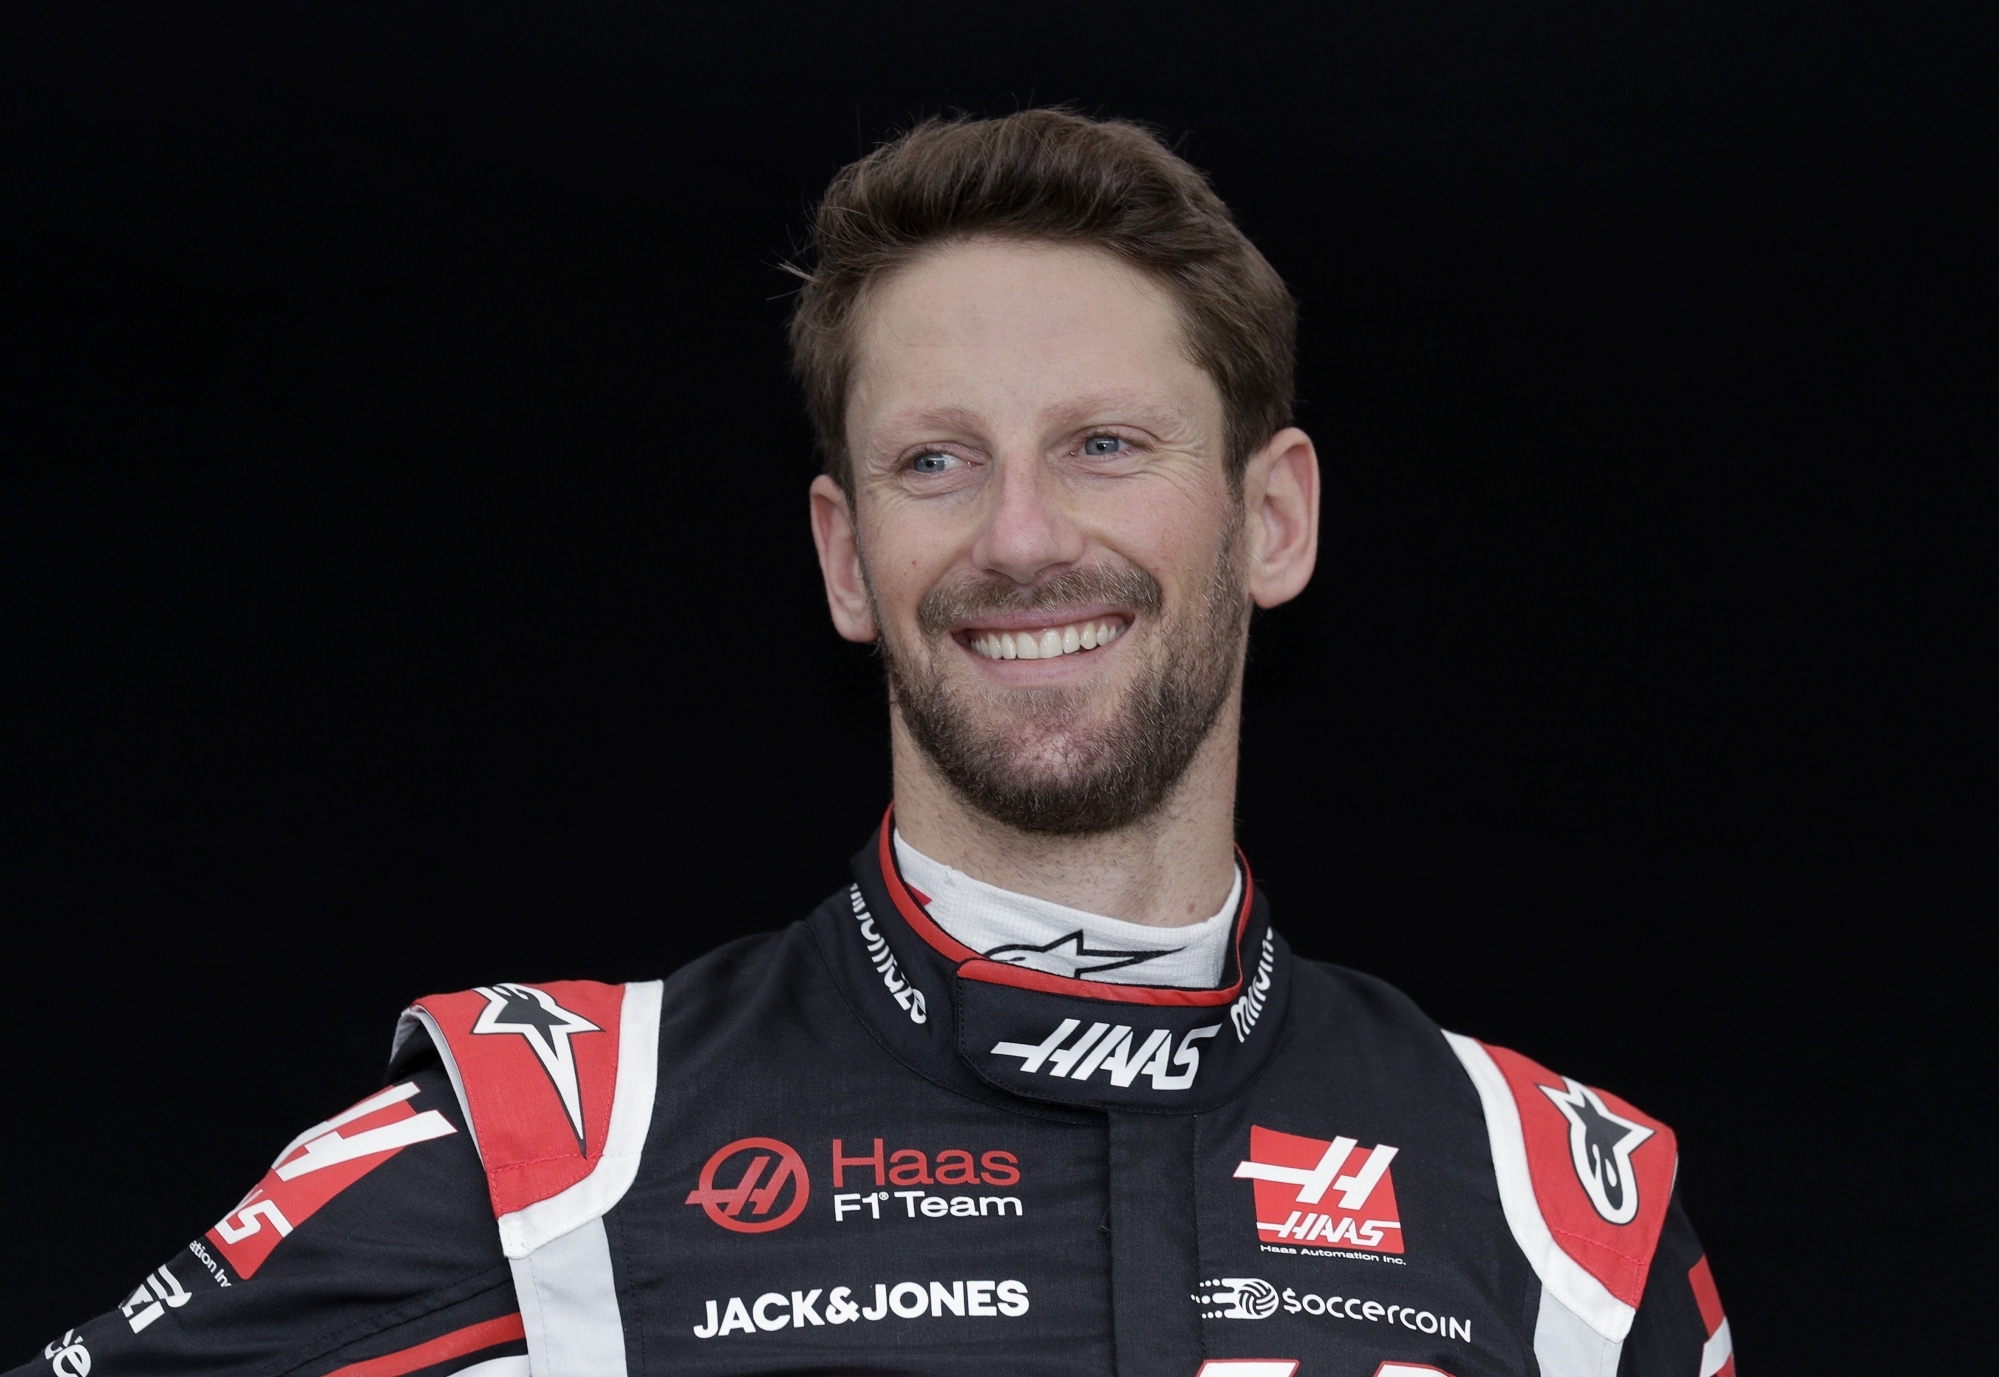 Deux mois après son accident spectaculaire, Romain Grosjean a retrouvé le sourire.